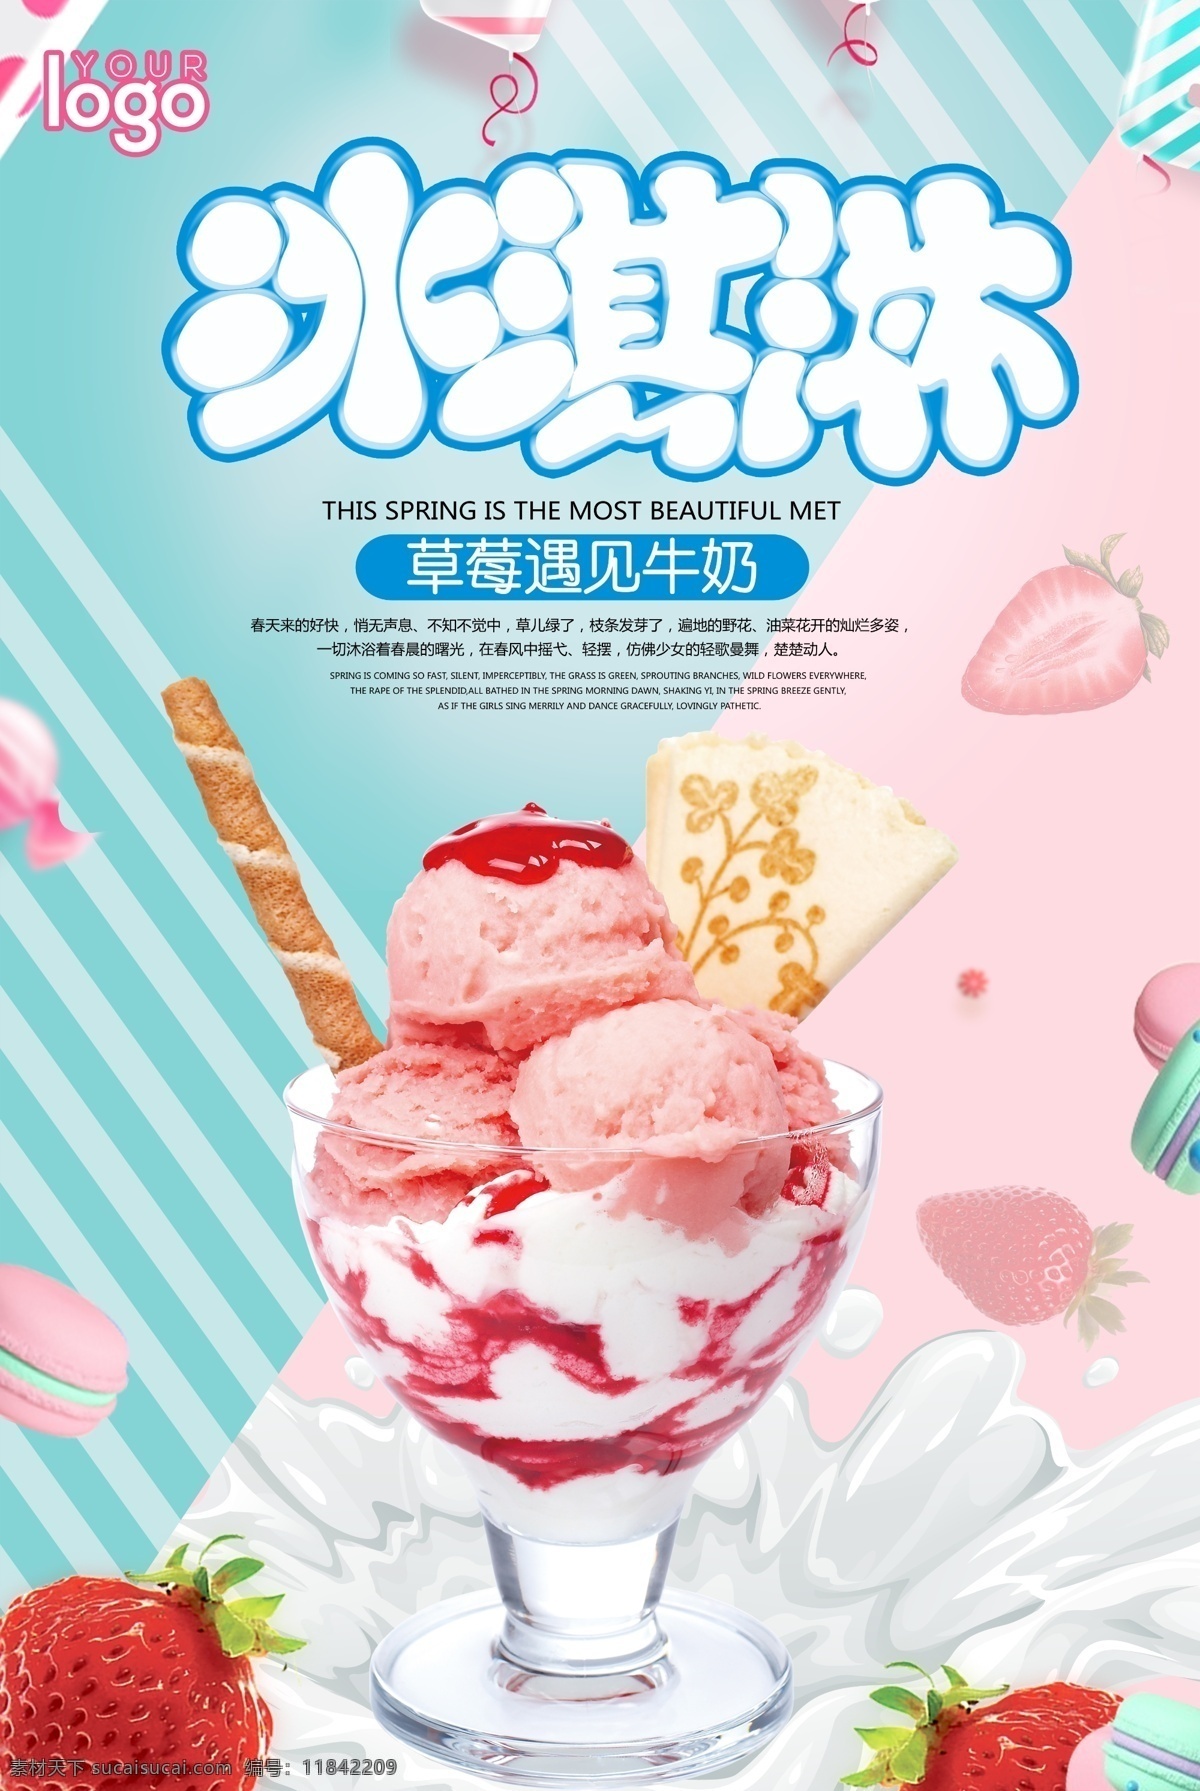 草莓 牛奶 冰淇淋 宣传海报 甜筒 冰淇淋海报 冰淇淋广告 甜品海报 美味 冰淇淋球 冰激淋展架 冰淇淋店 冰淇凌 冰激淋 水果冰淇淋 冰淇淋招贴 点心海报 甜点海报 免费模版